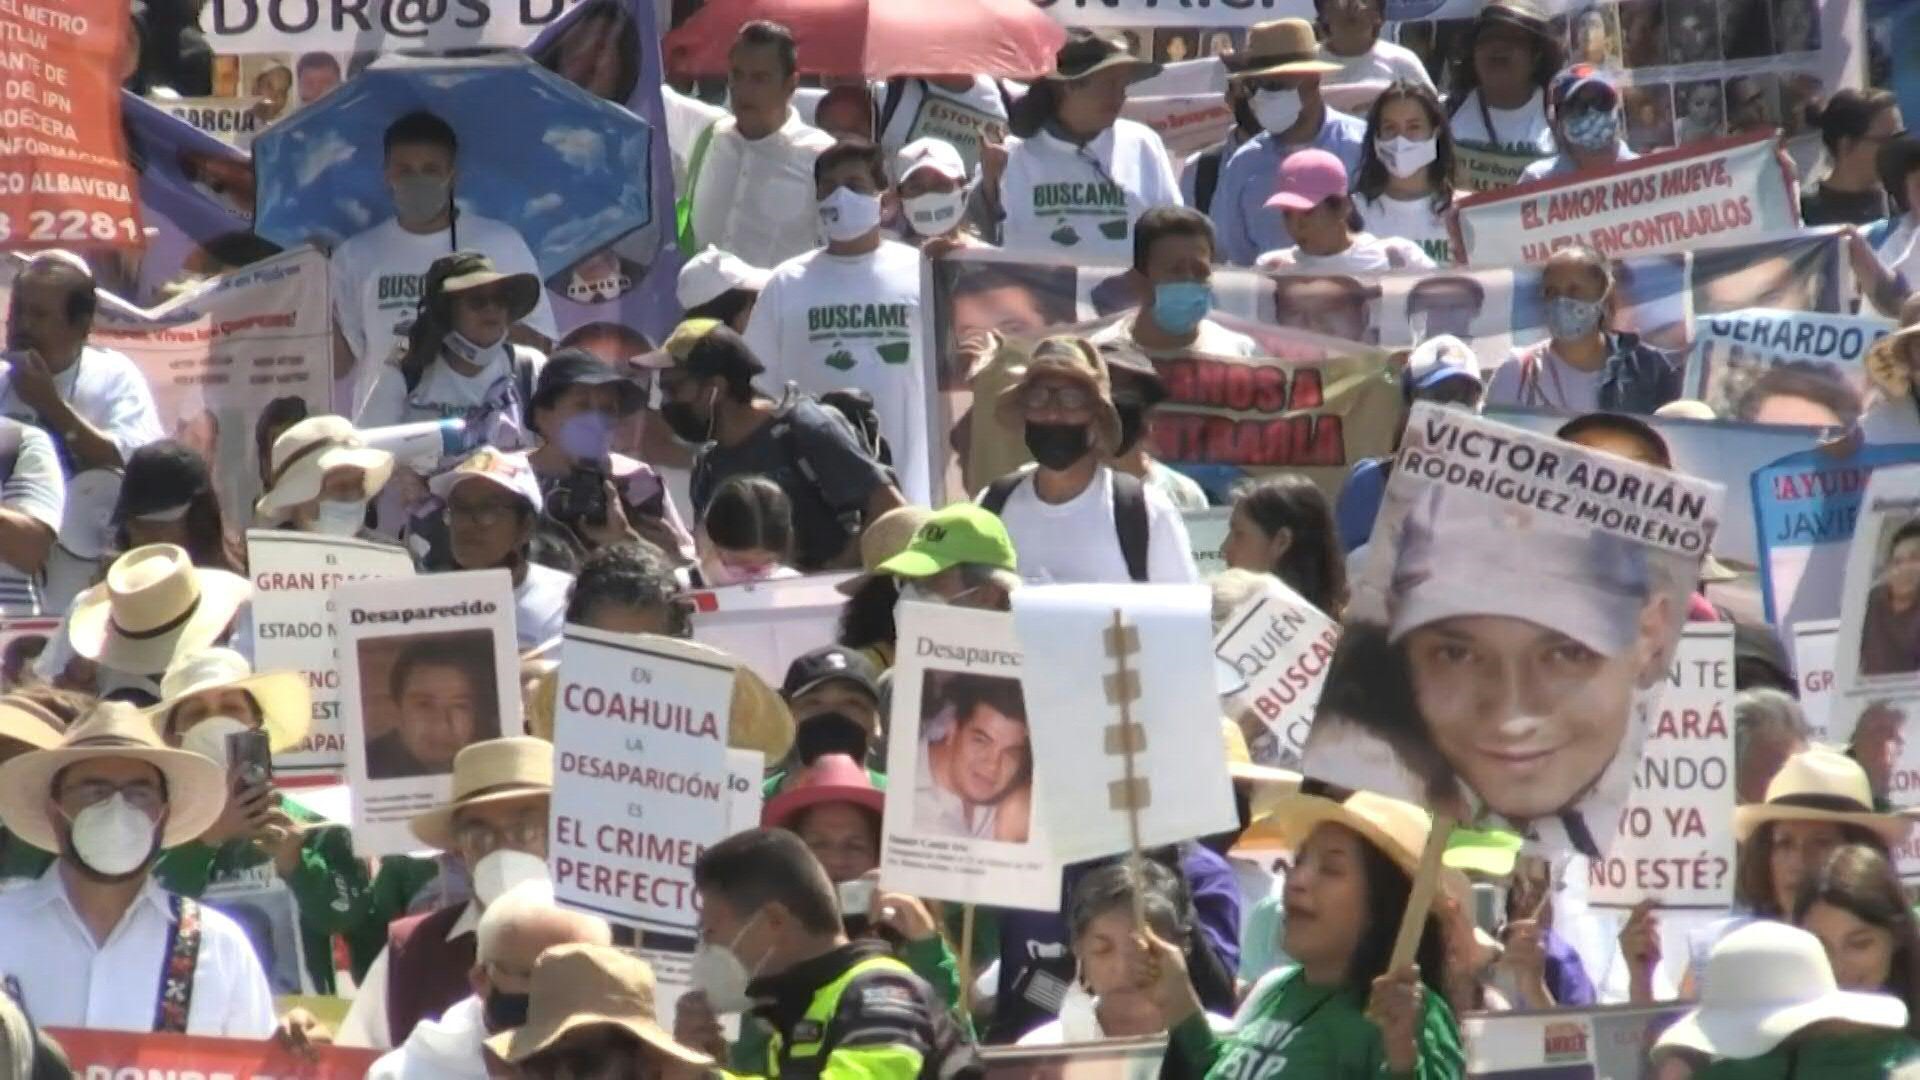 Crisis de desaparecidos en México: existe un subregistro al no reportar por desconfianza en las autoridades